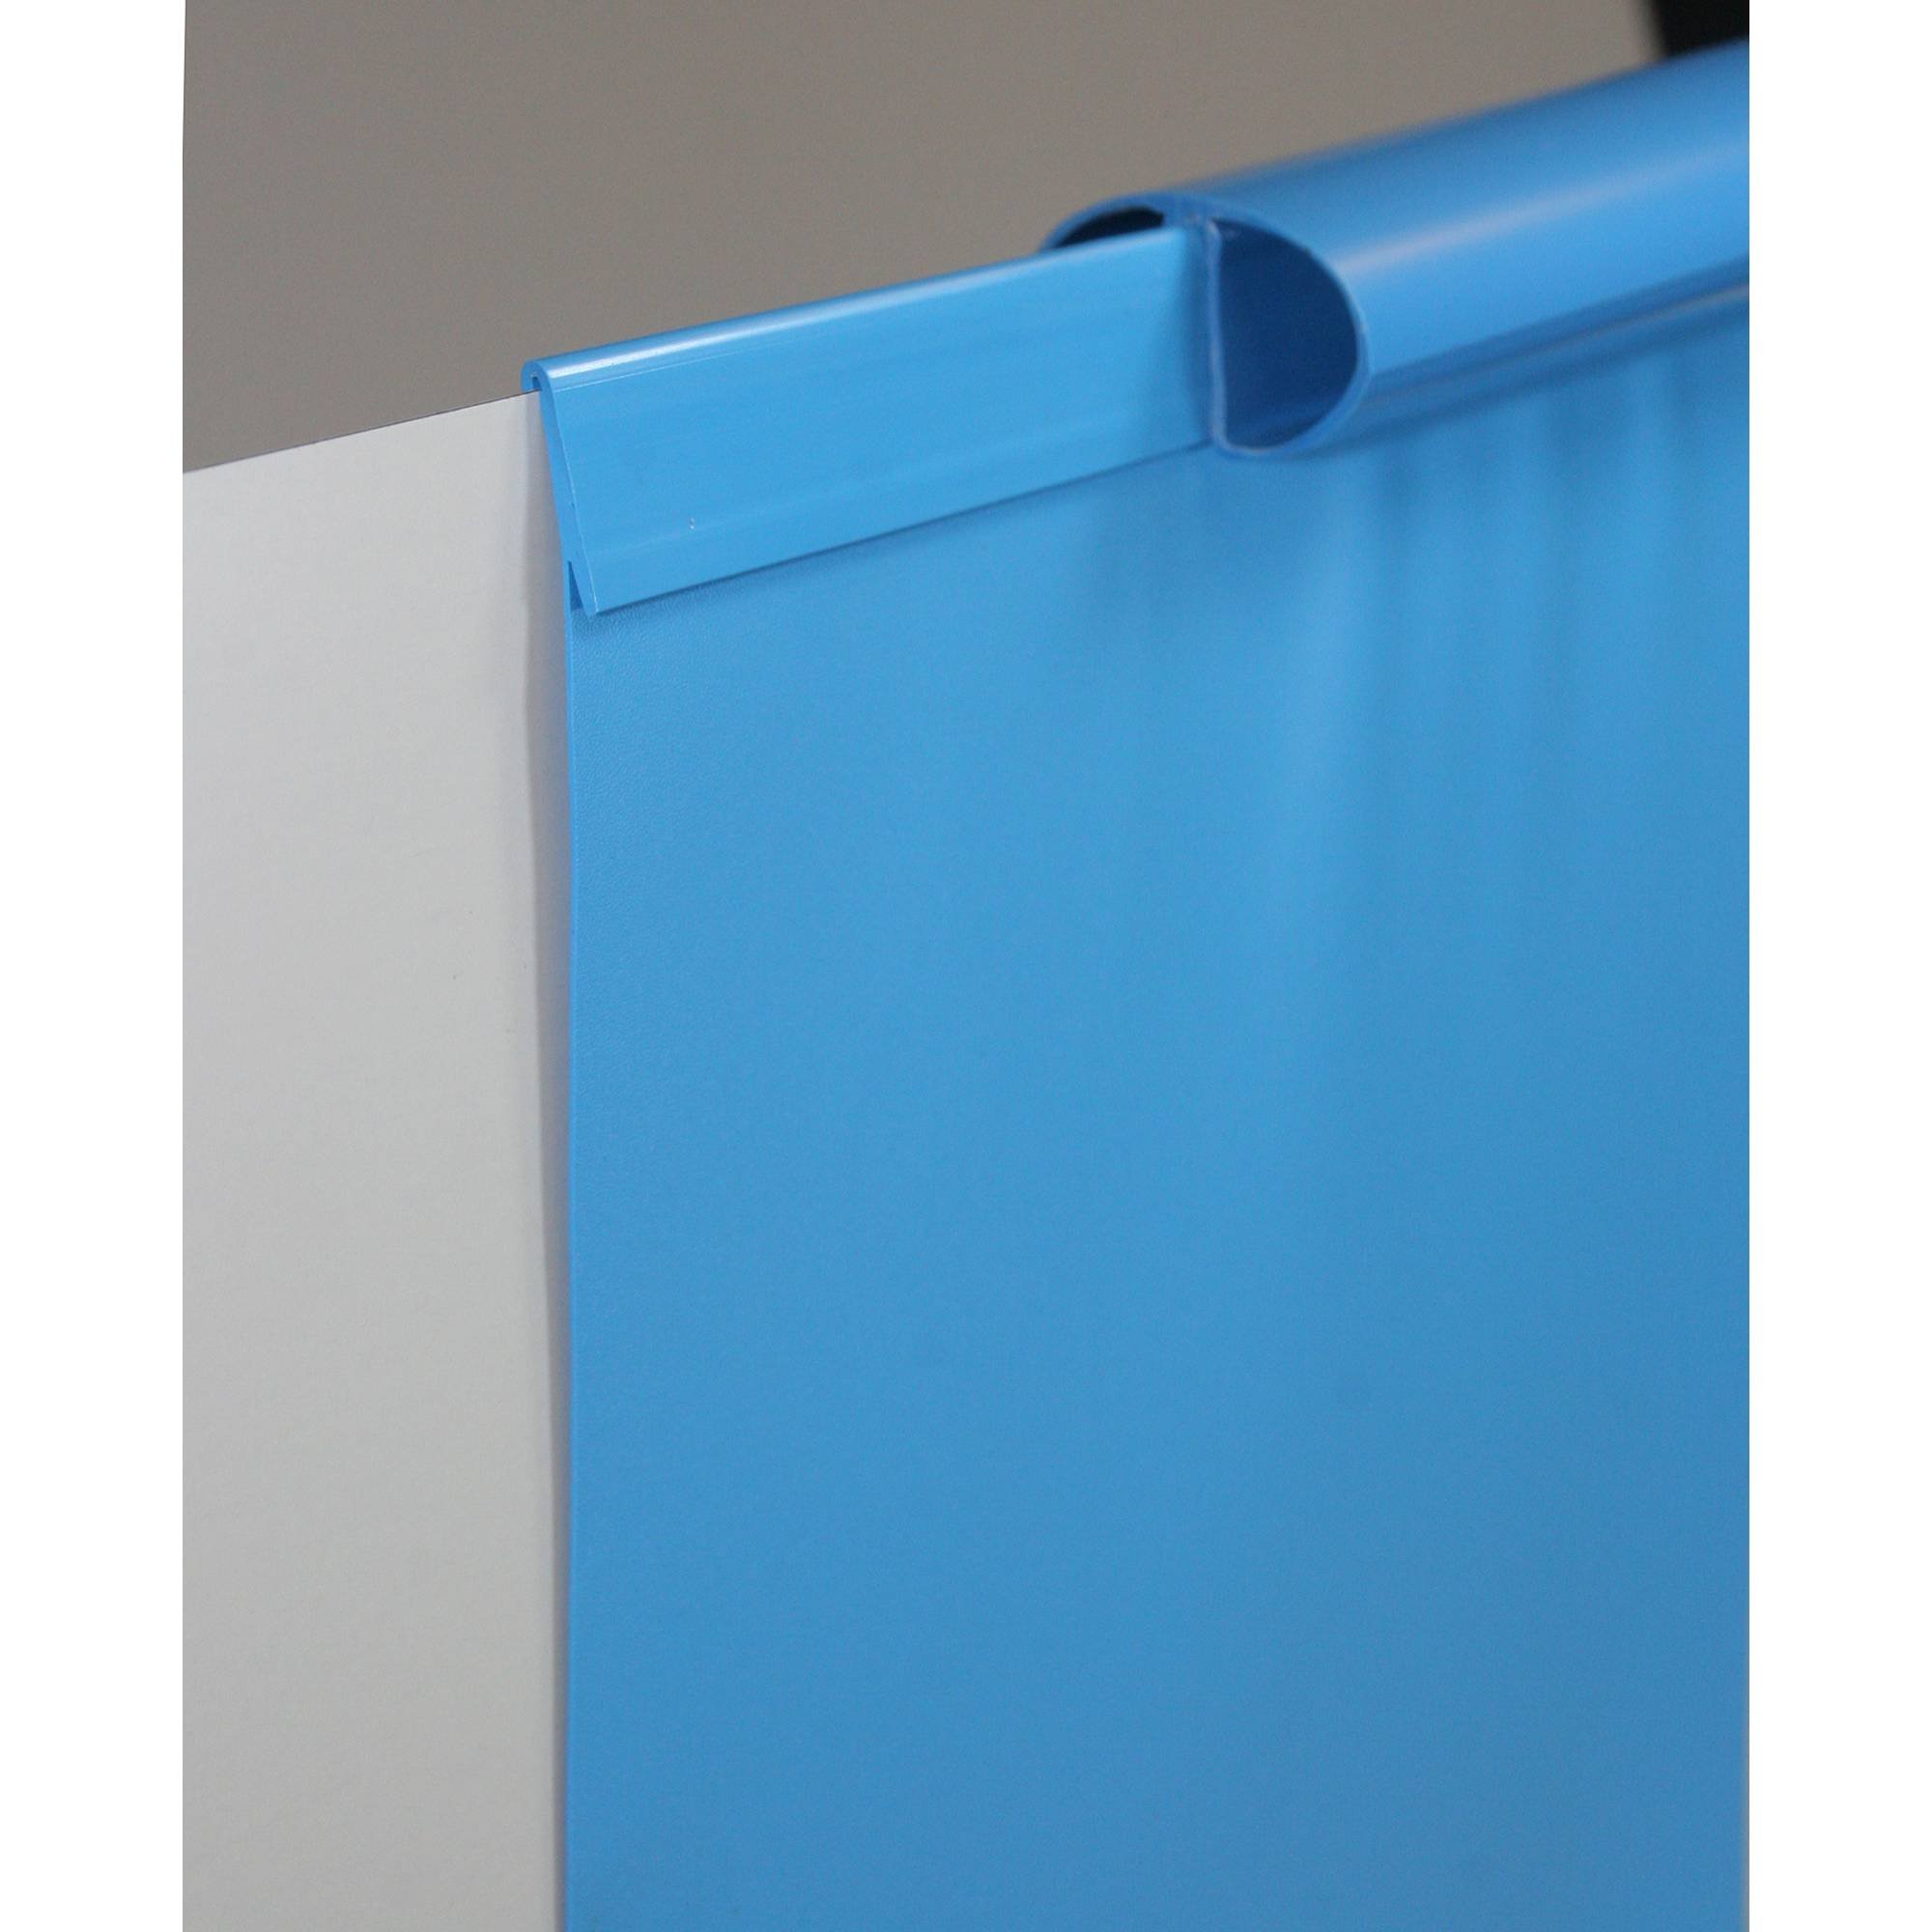 Poolfolie Ersatzfolie Rundbecken 450x150cm - Dicke 0,6mm - Einhängebiese - blau